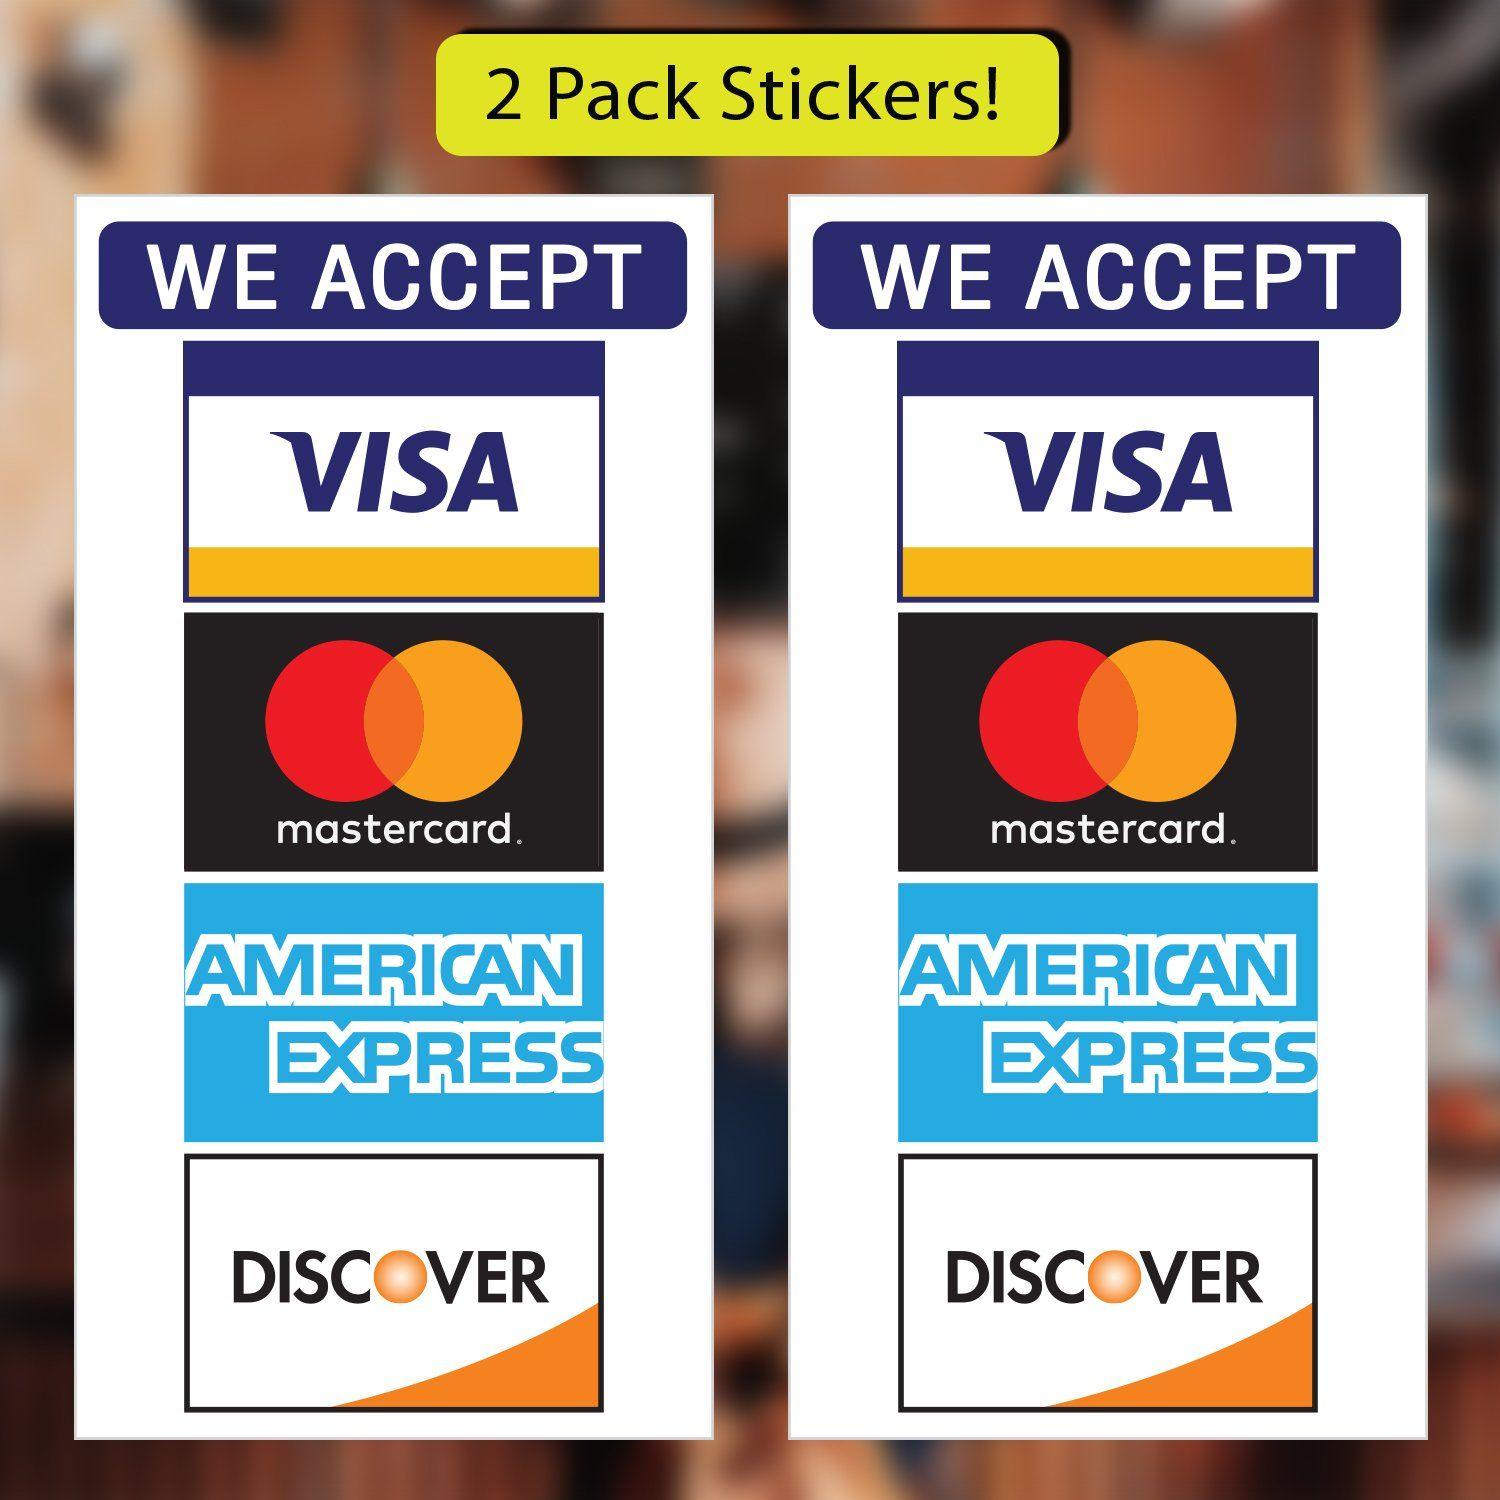 Visa MasterCard Discover Credit Card Logo - Amazon.com : Credit Card Stickers - Visa, MasterCard, Amex and ...